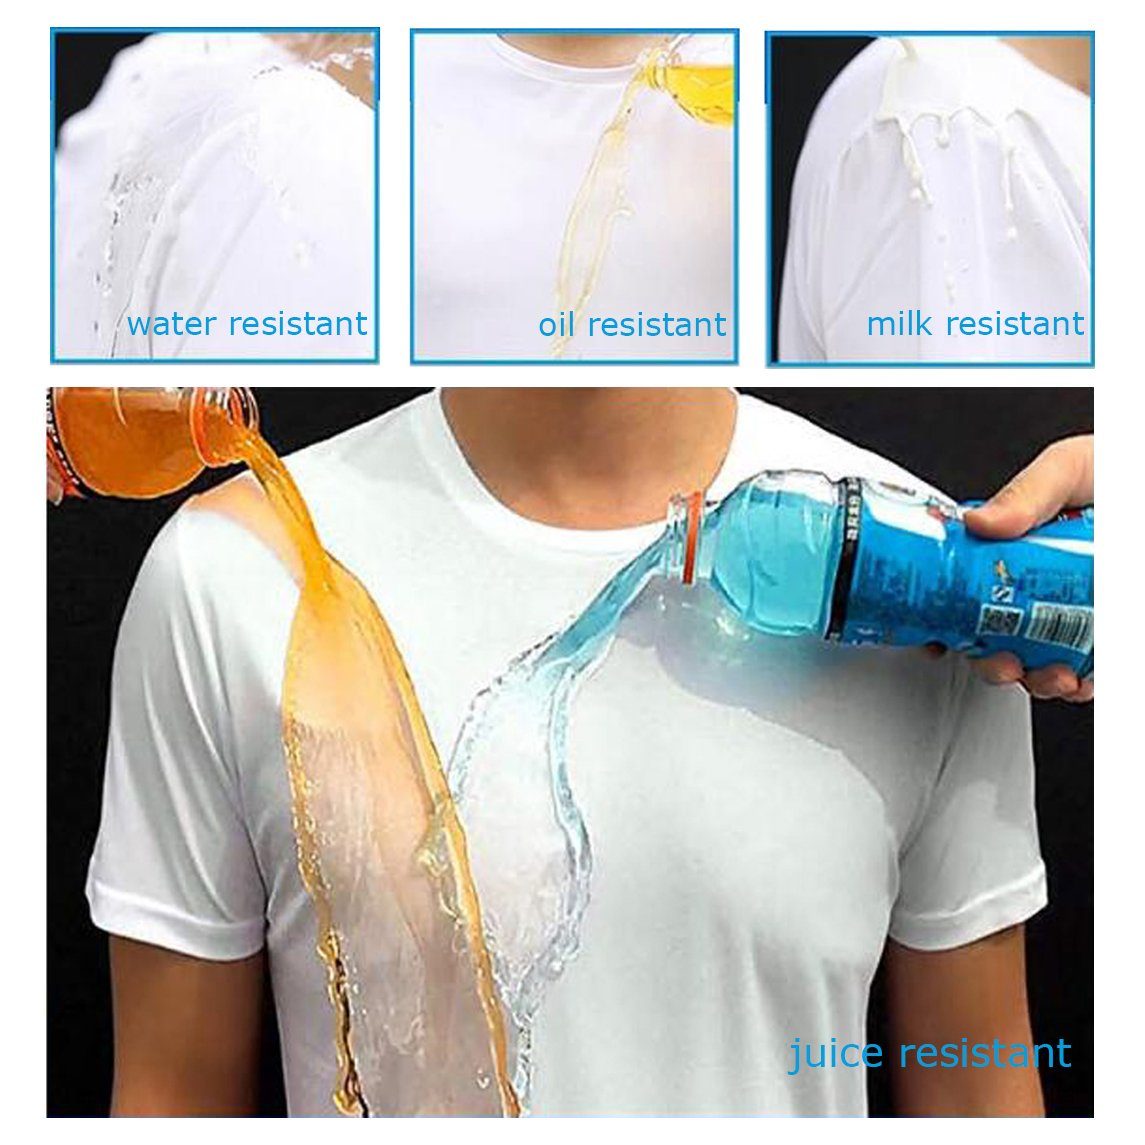 DEBAIJIA Kurzarmshirt Antifouling T-Shirt Rundhalsausschnitt Weiß Kurzarm Wasserdichtes